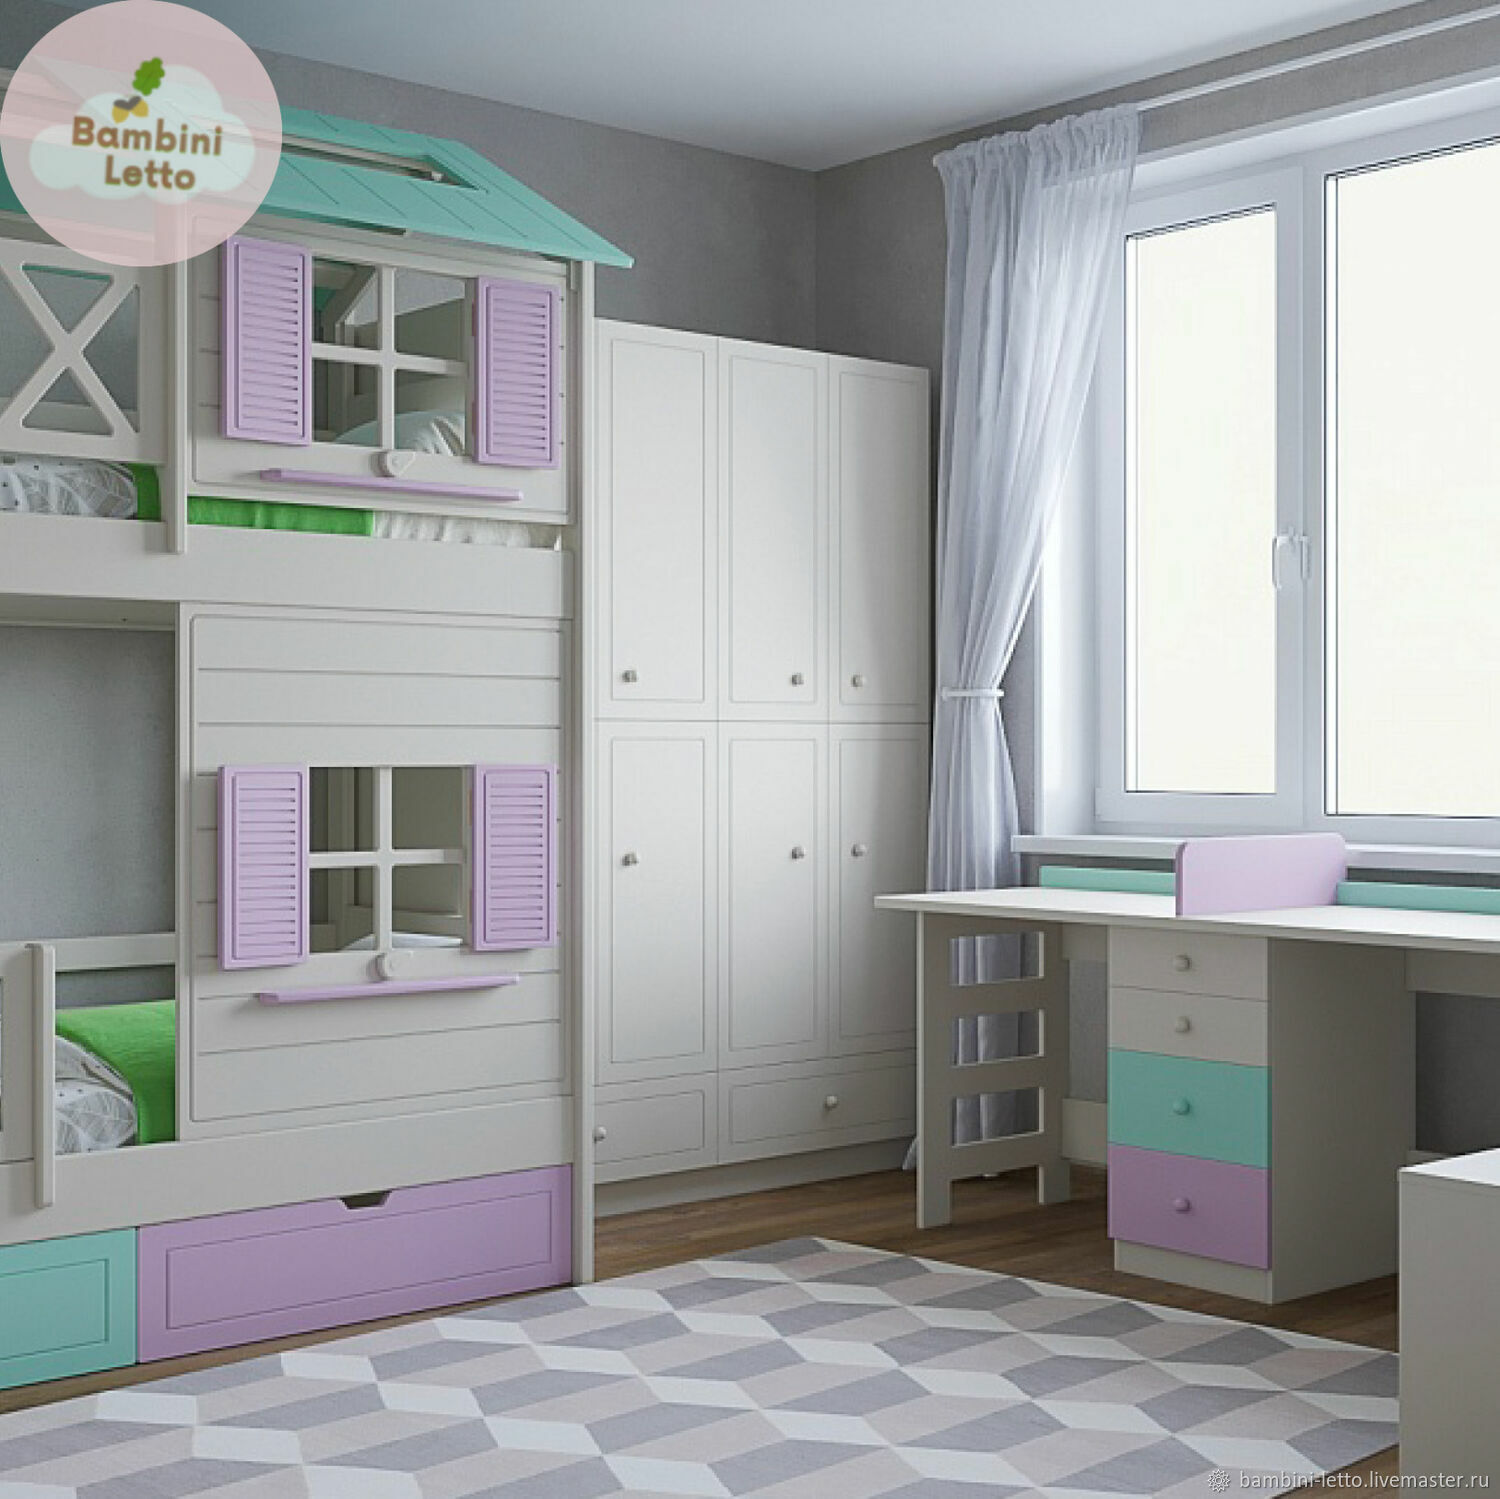 Как подобрать мебель для детской комнаты - рекомендации Happy Home